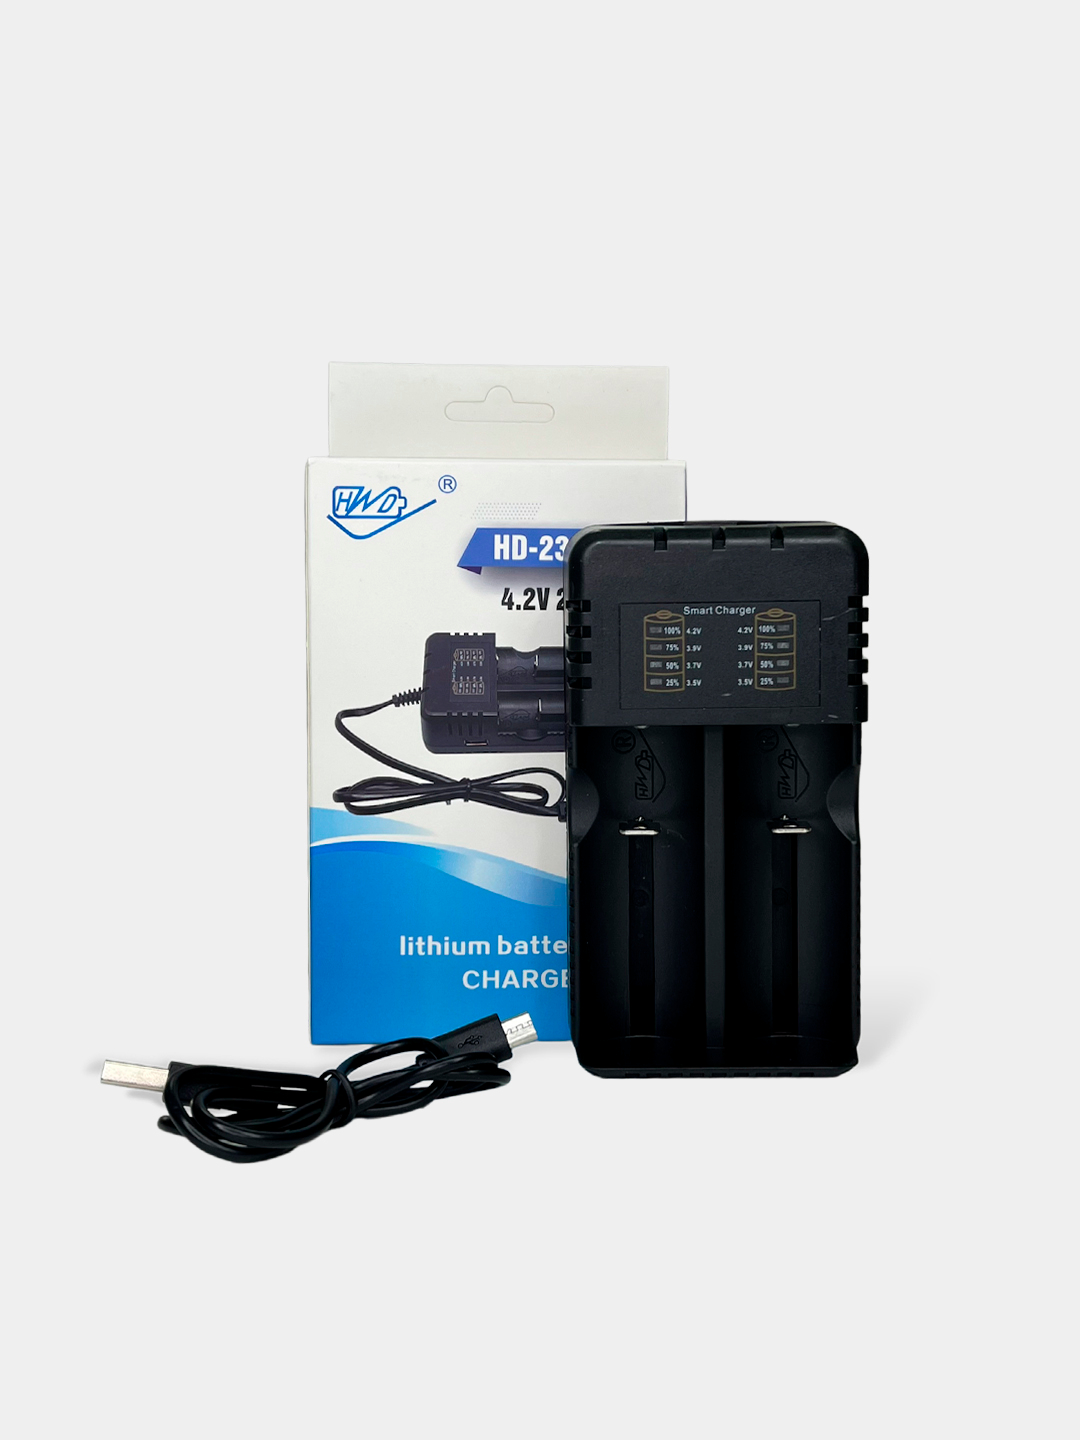 Портативное зарядное устройство (Power Bank) VIXION DP-12 5000mAh (Micro-USB,2-USB) (черный)